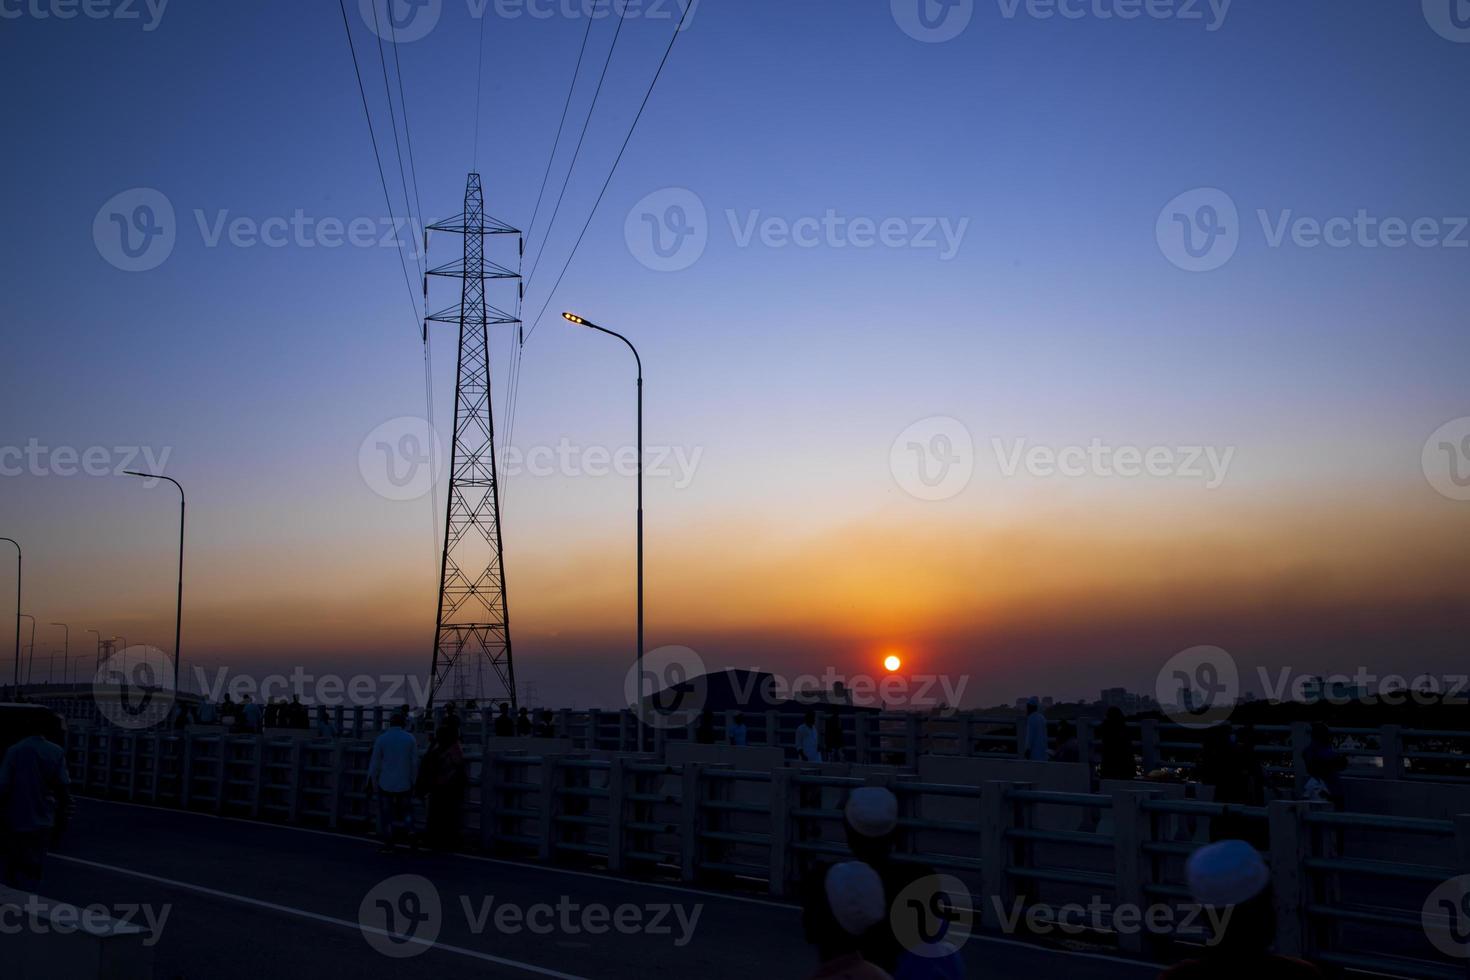 hermosa puesta de sol colorida con paisaje de pilón eléctrico de alto voltaje foto